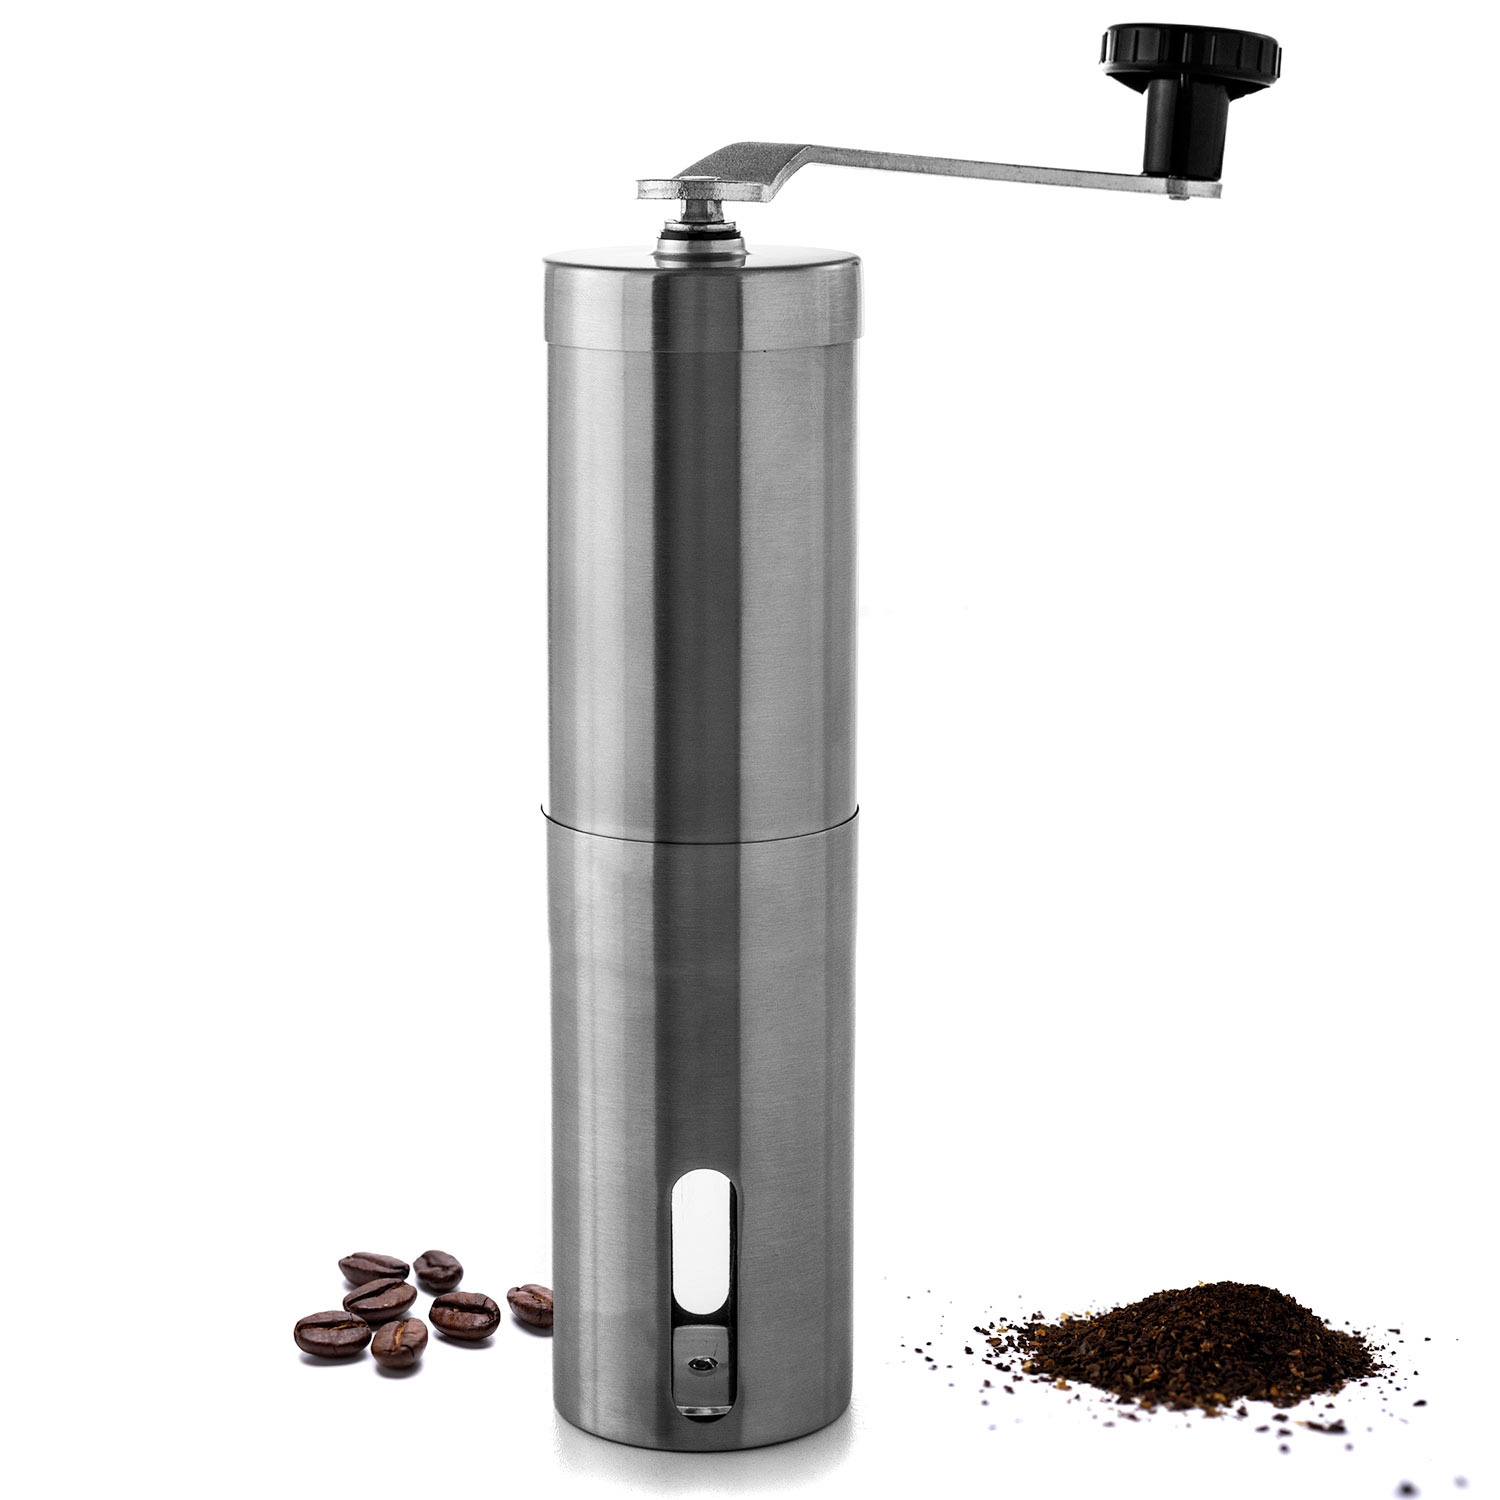 Biltek Stainless Steel Manual Coffee Grinder, Adjustable Conical Ceramic Burr Grinder for Precision Brewing